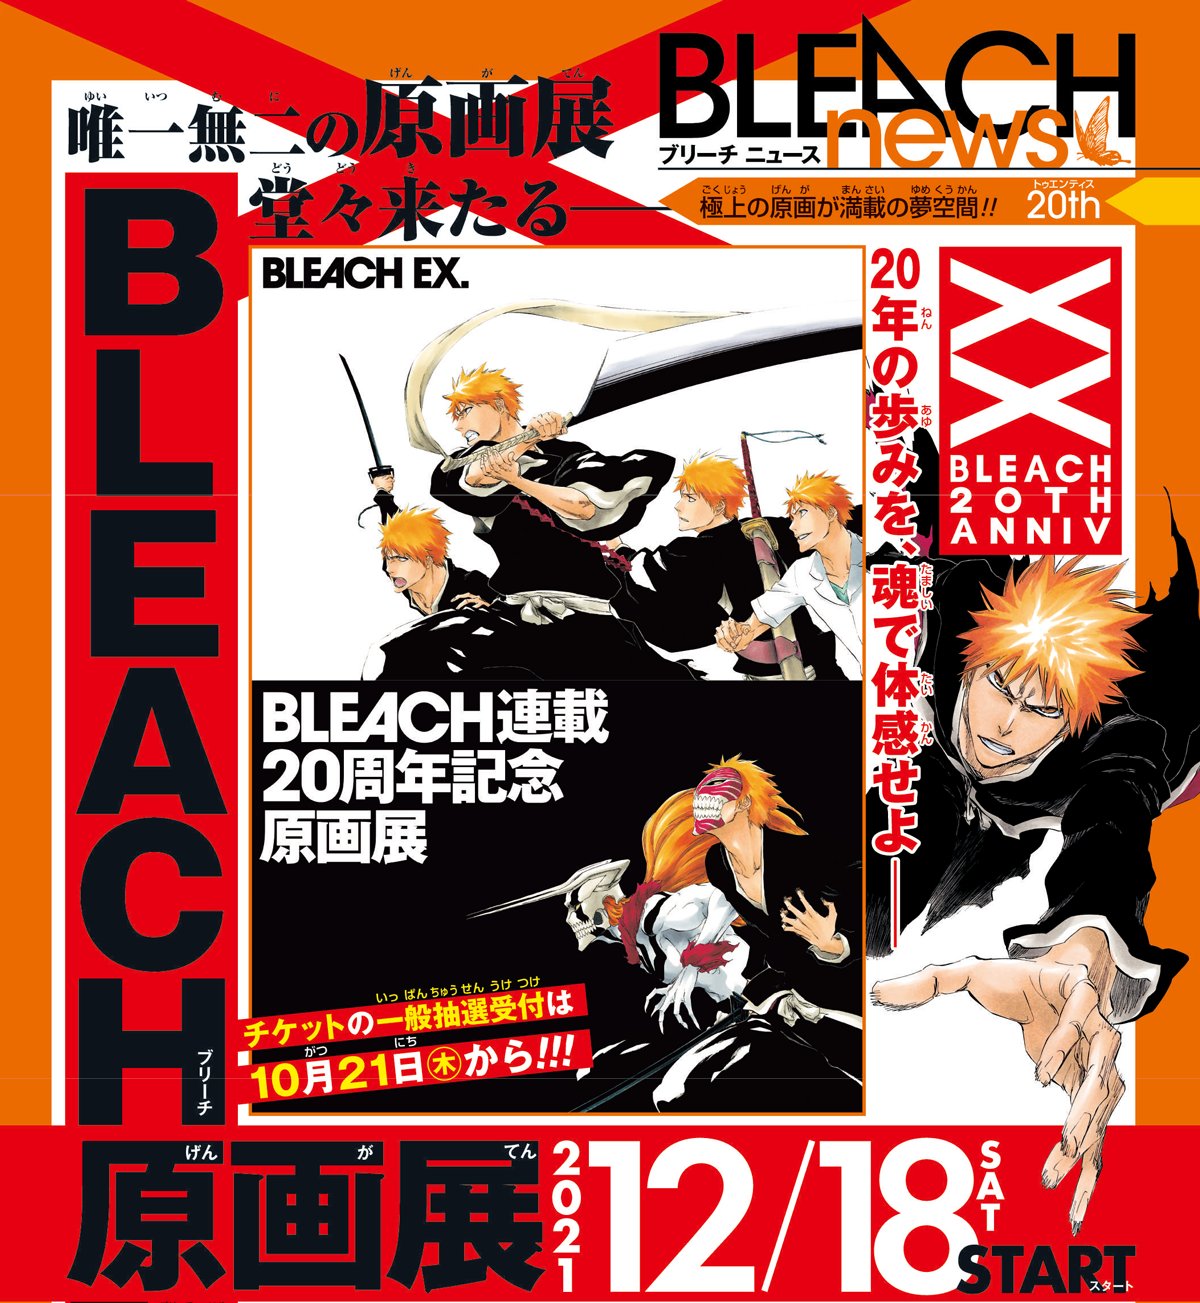 Bleach revela un video promocional para su próxima exhibición AnimeCL